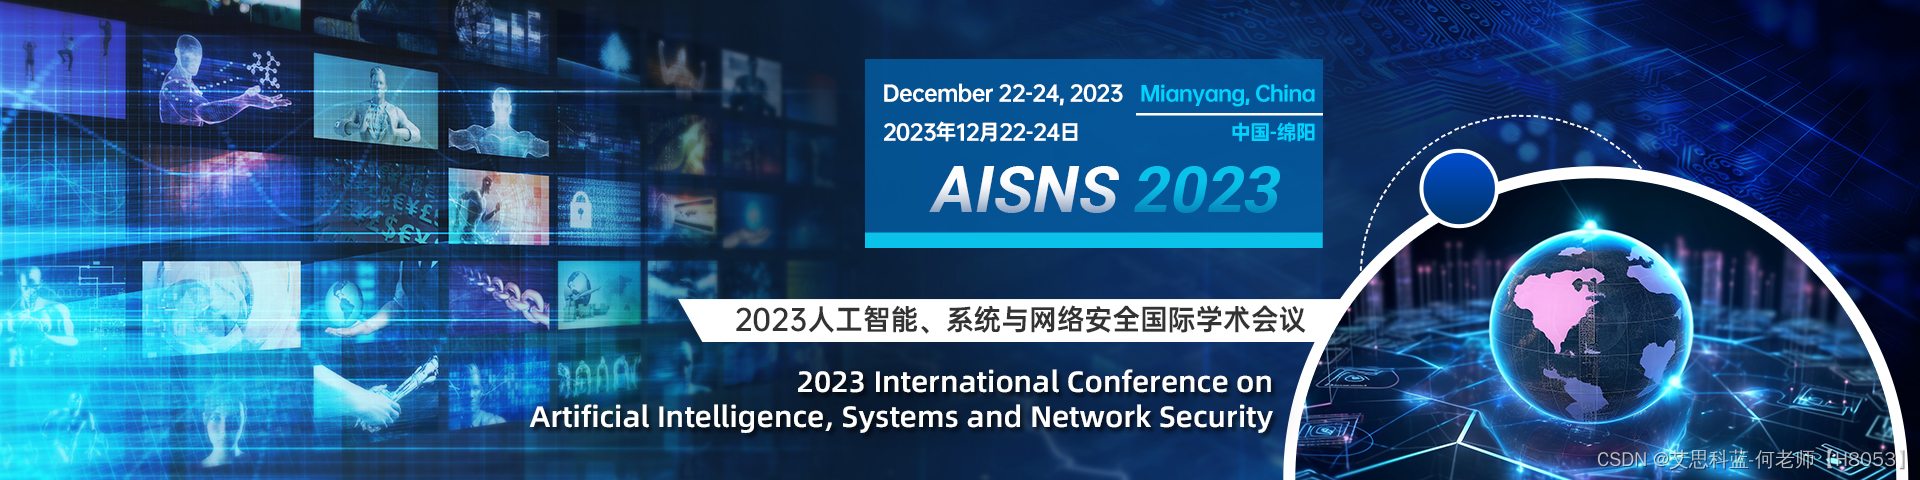 【EI征稿中|ACM出版】2023 人工智能、系统与网络安全国际学术会议 (AISNS 2023）